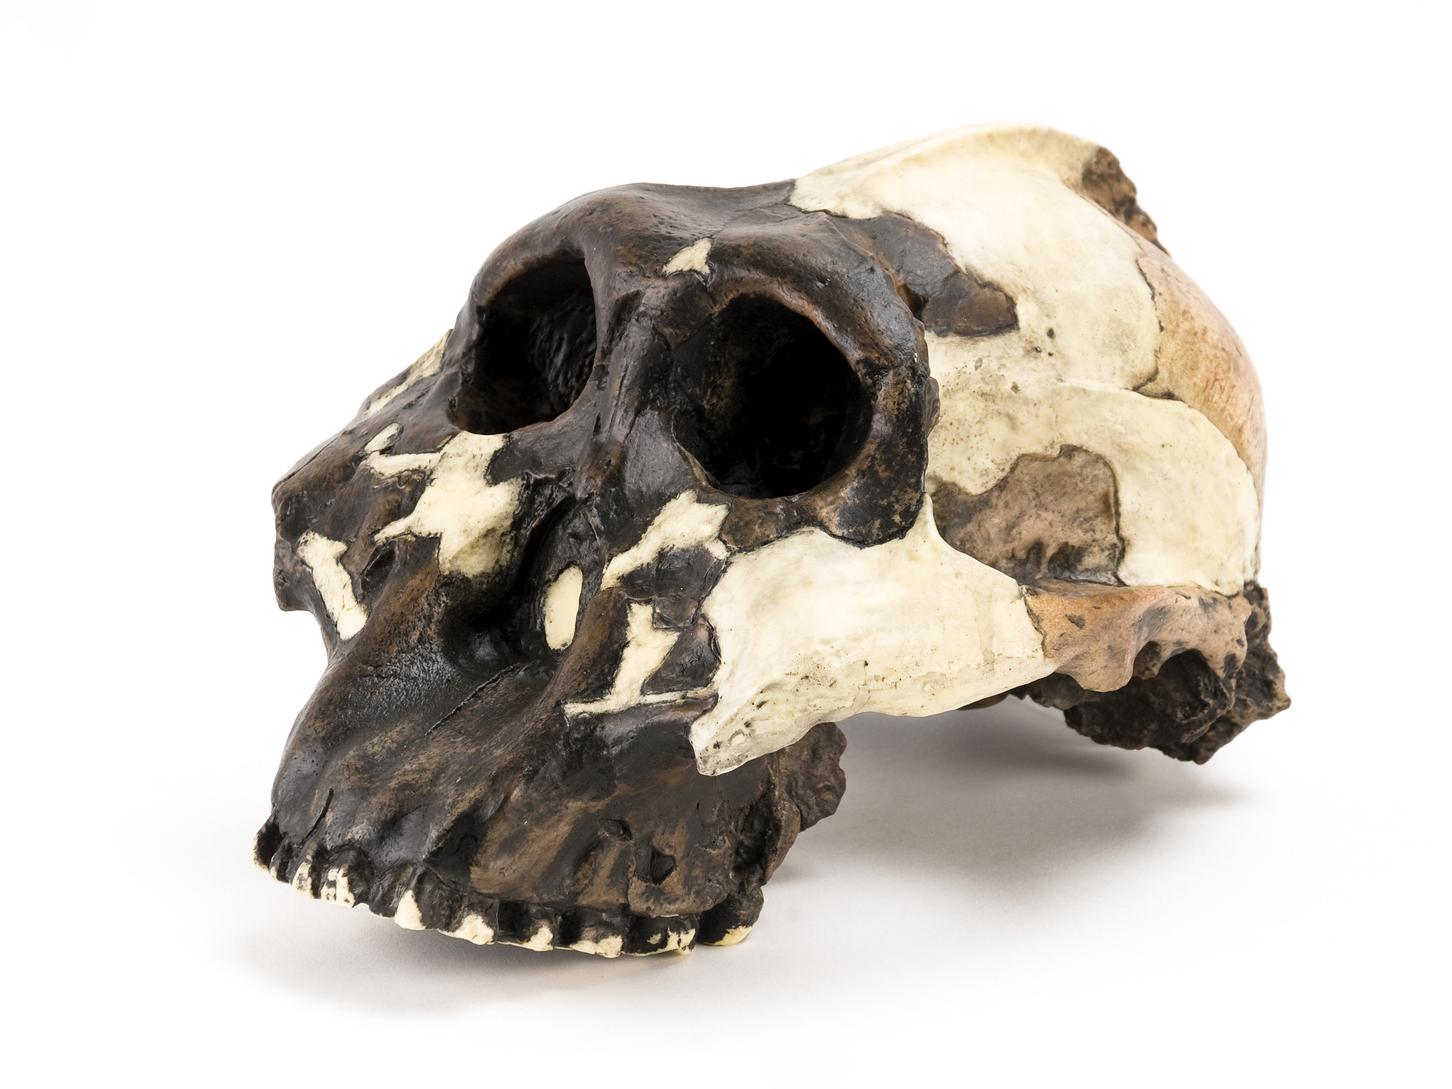 Australopithicus skull